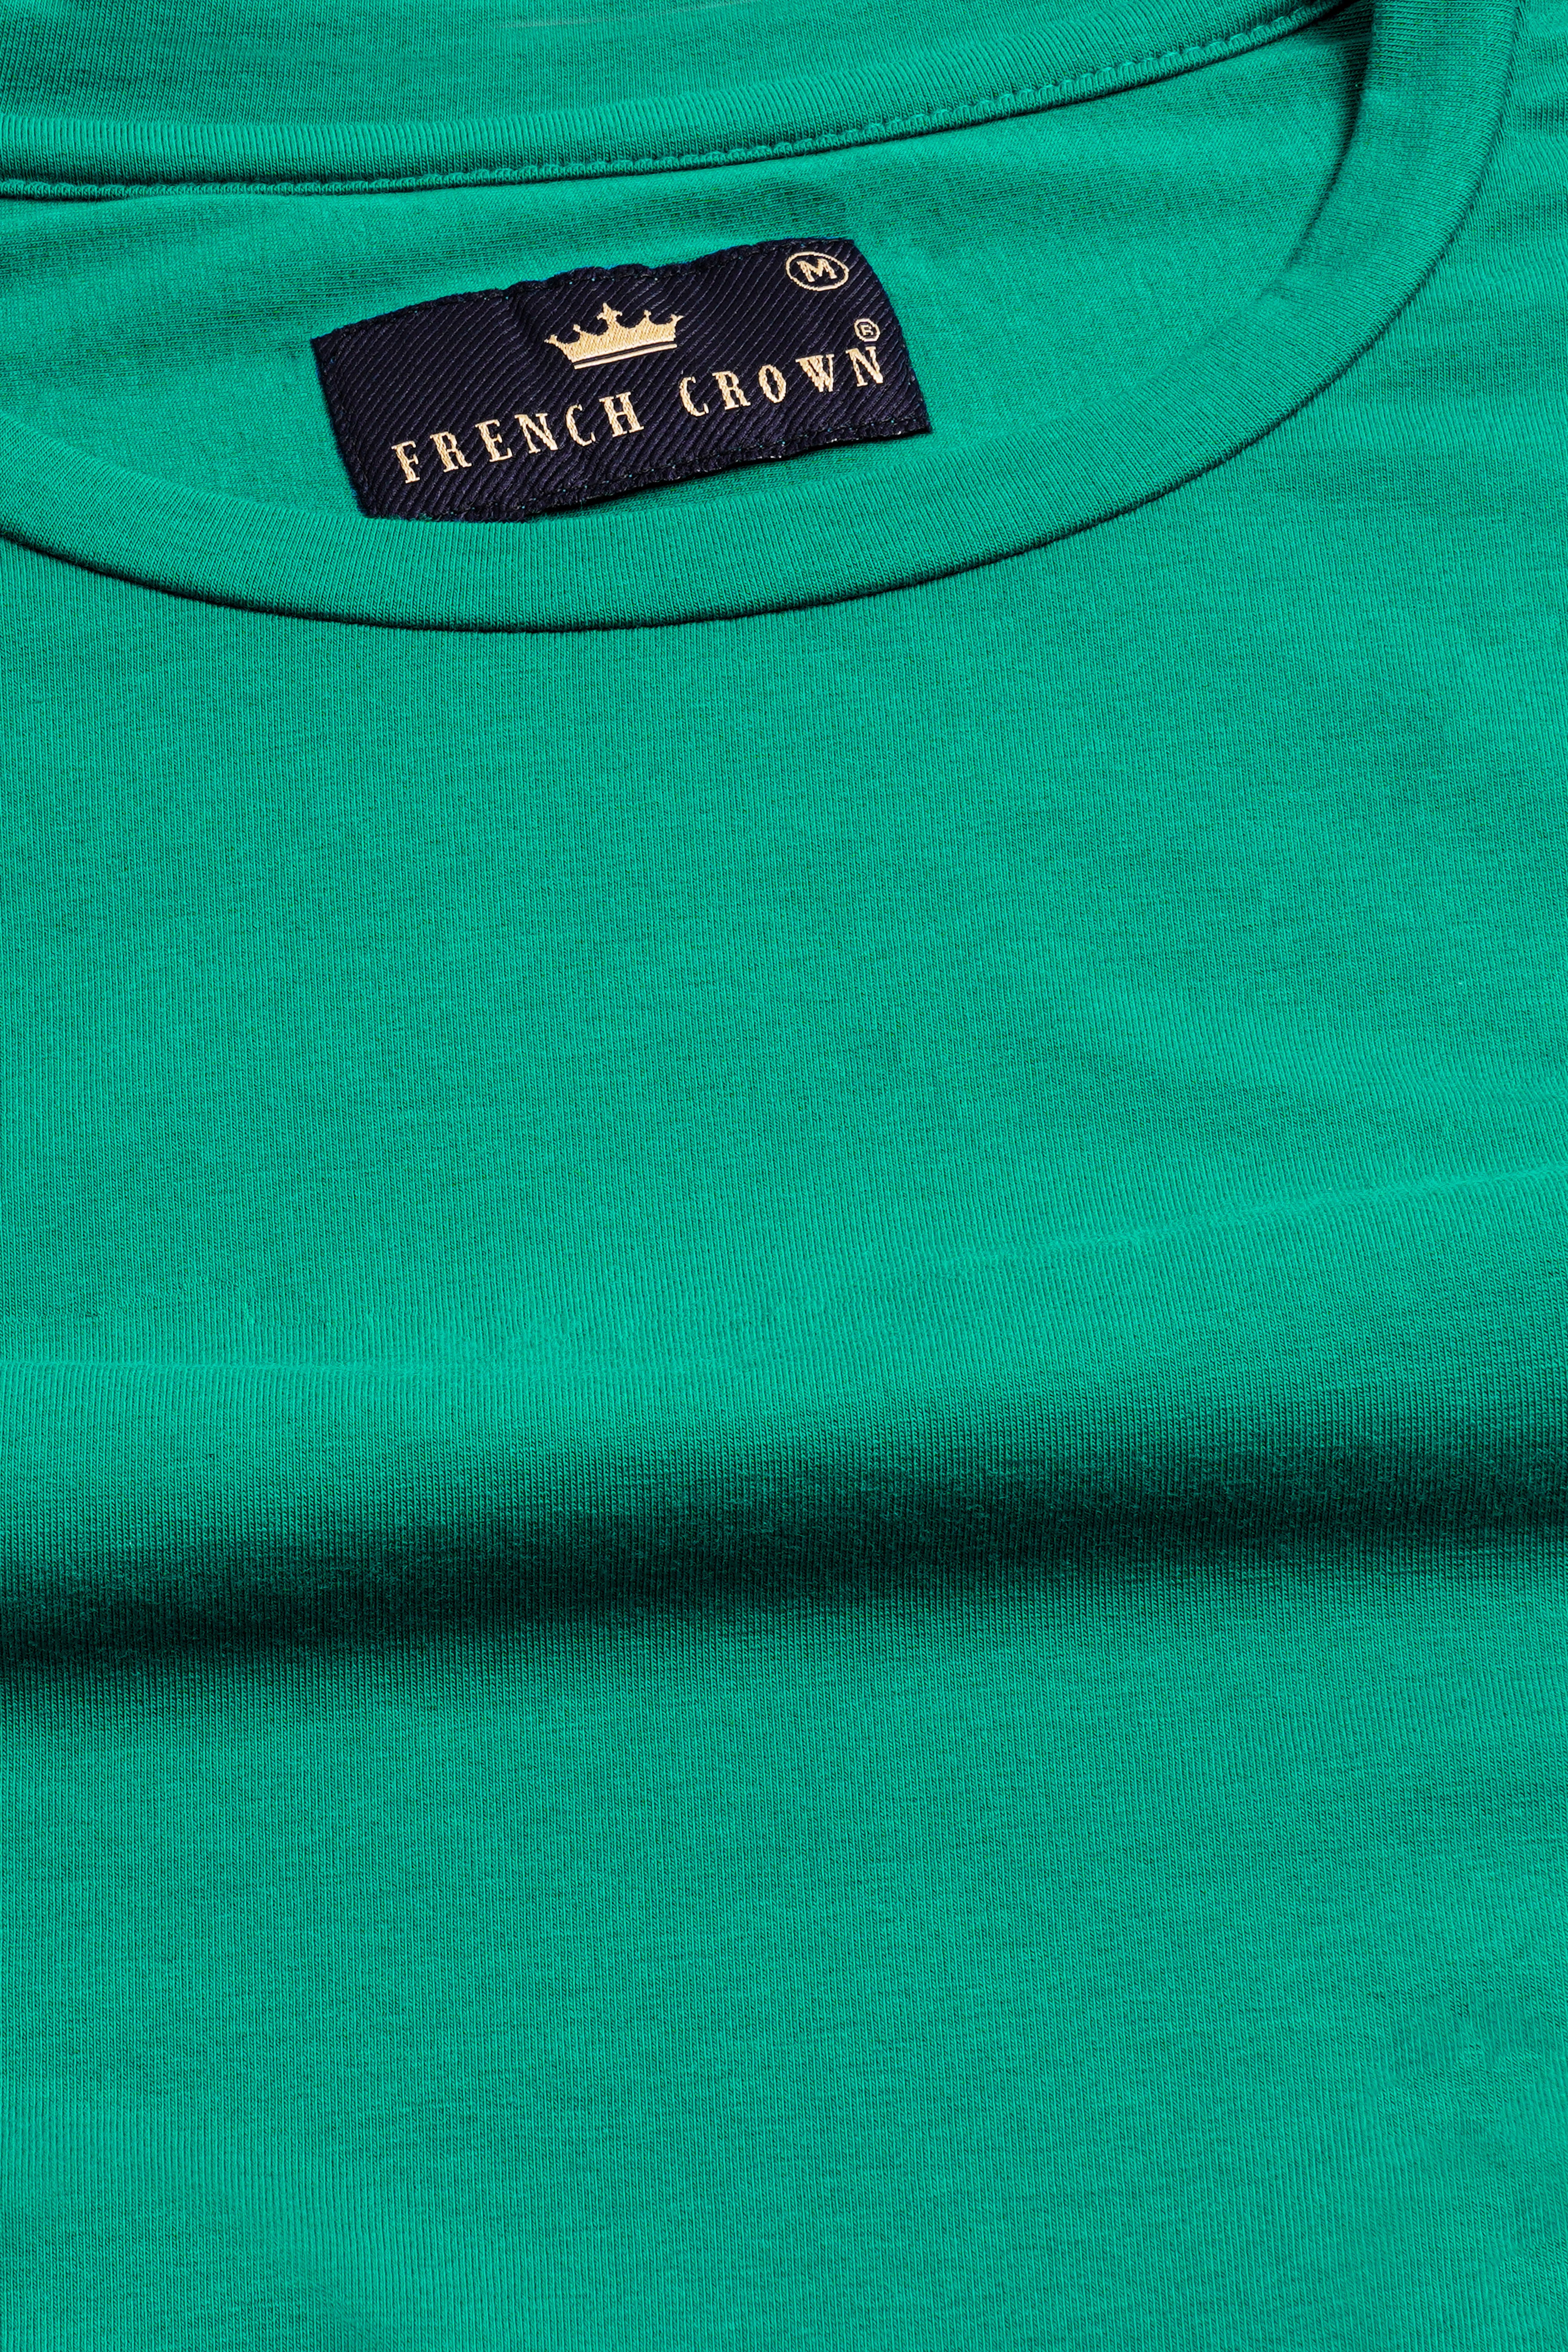 Gossamer Green Cats Hand Painted Premium Cotton T-shirt TS005-W017-ART-S, TS005-W017-ART-M, TS005-W017-ART-L, TS005-W017-ART-XL, TS005-W017-ART-XXL